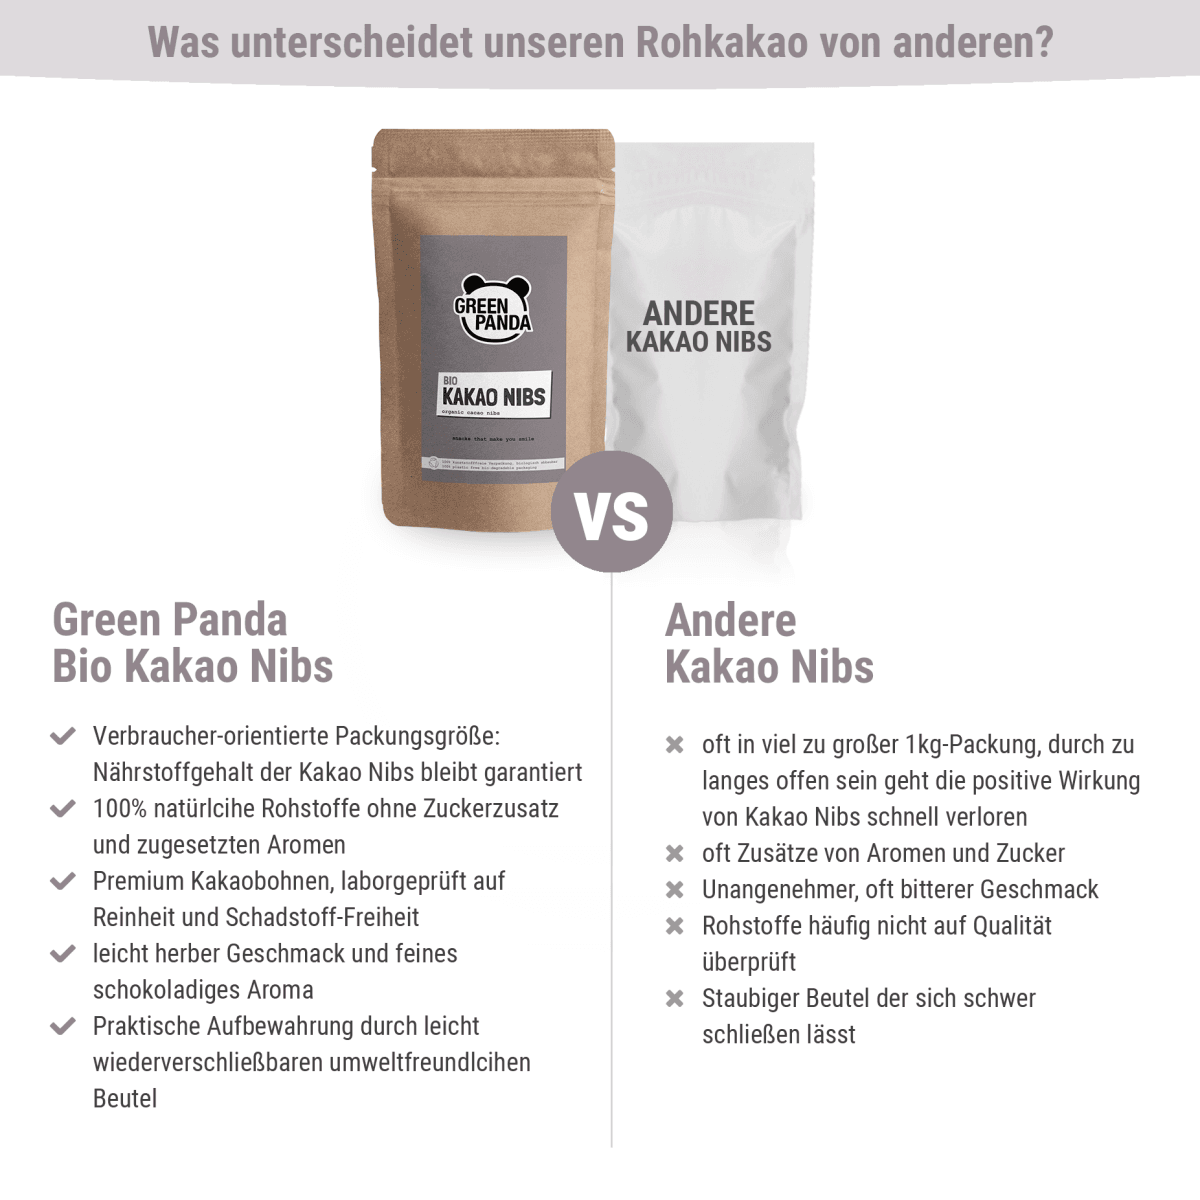 Bio Kakao Nibs - Green Panda